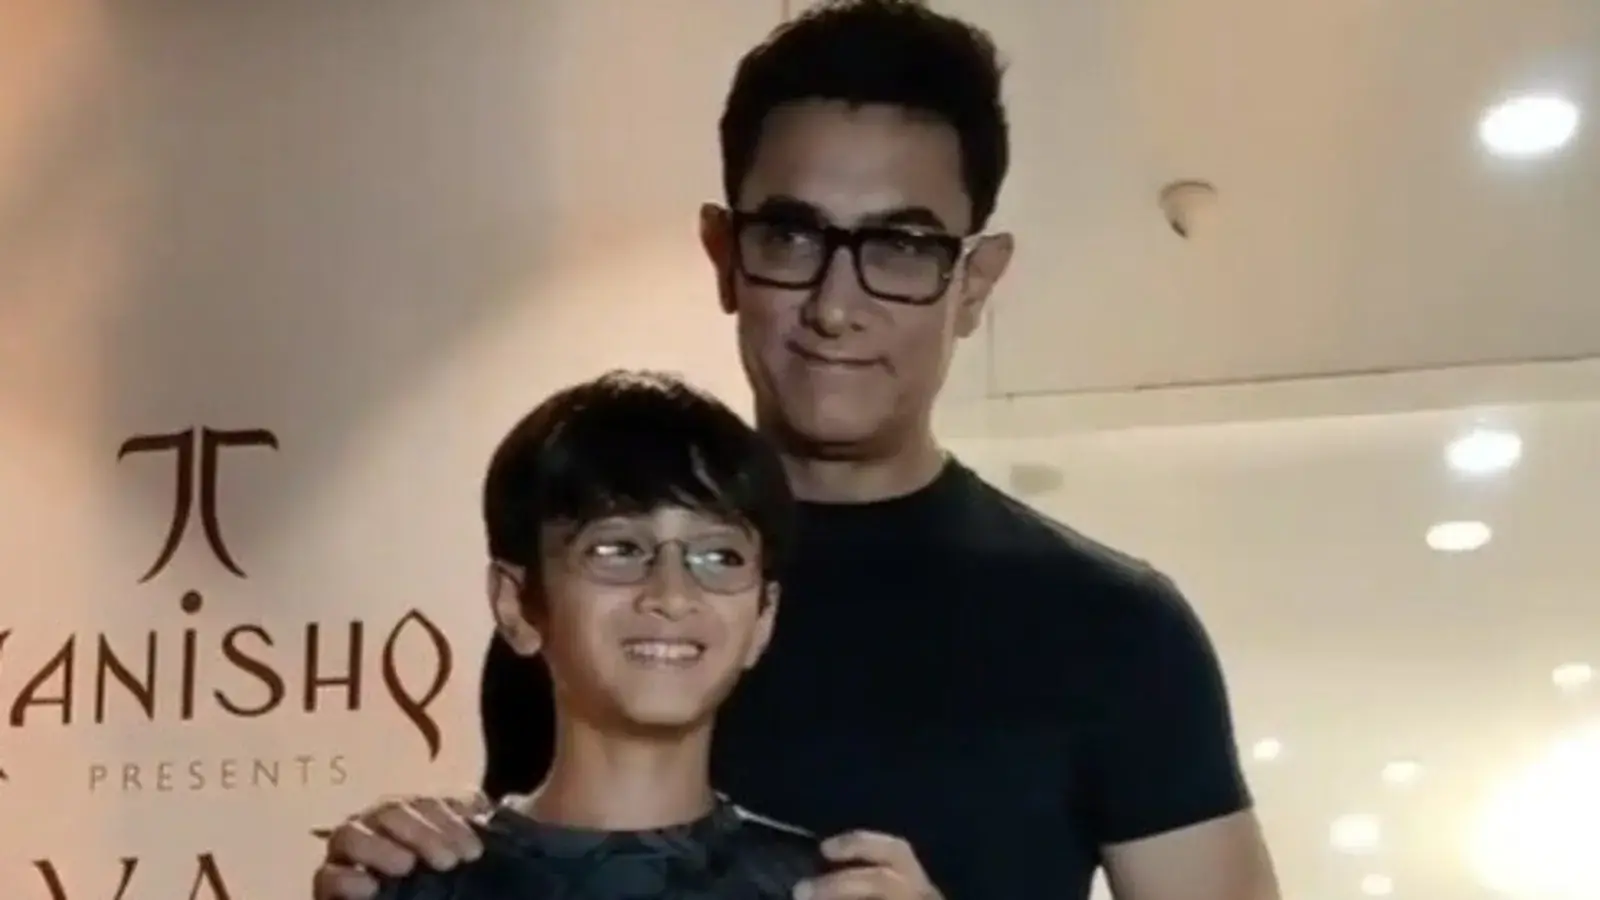 आजाद के साथ शॉपिंग के लिए निकले आमिर खान, फैन्स बोले- 'जैसा बाप वैसा बेटा'
